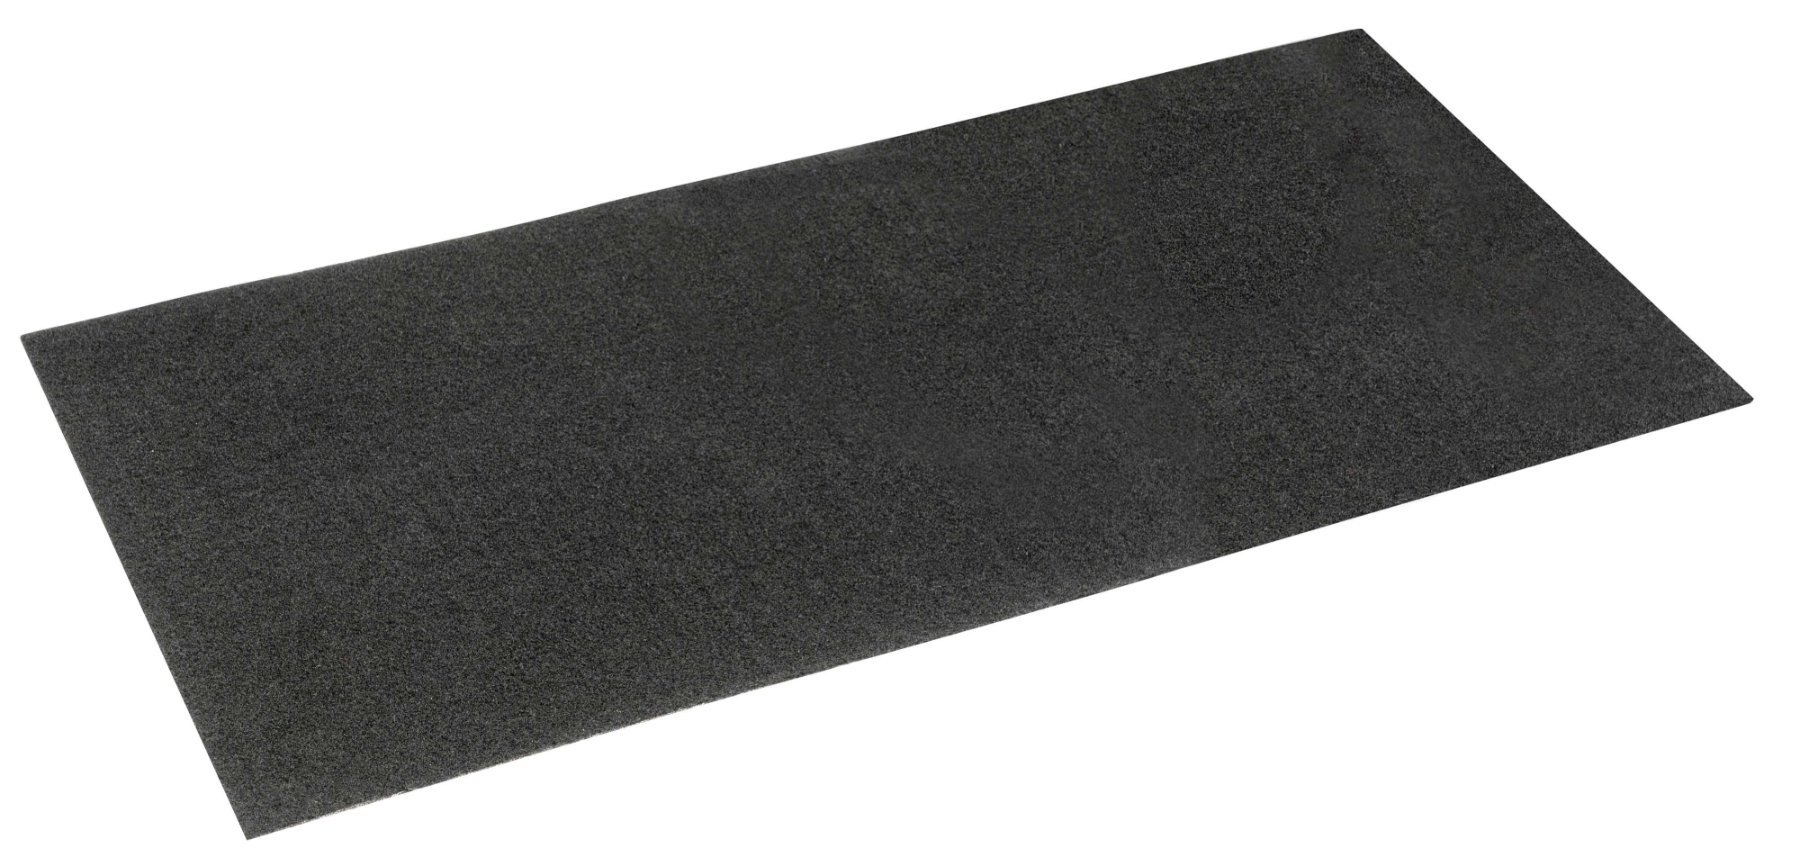 Öl-Auffangmatte Clean Max, robuste Schutzmatte 100x200 cm schwarz